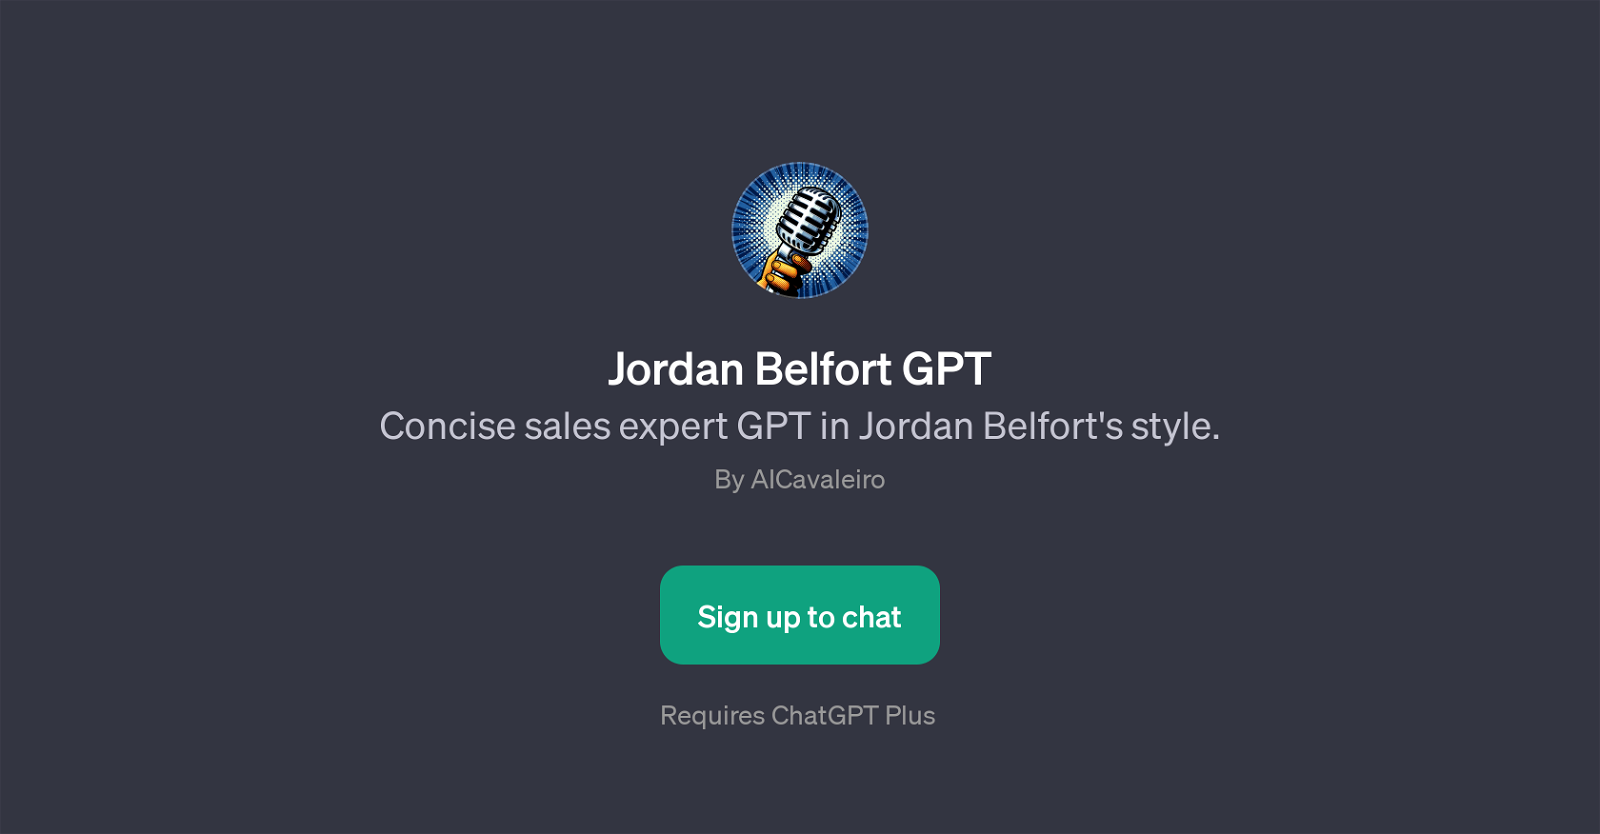 Jordan Belfort GPT website